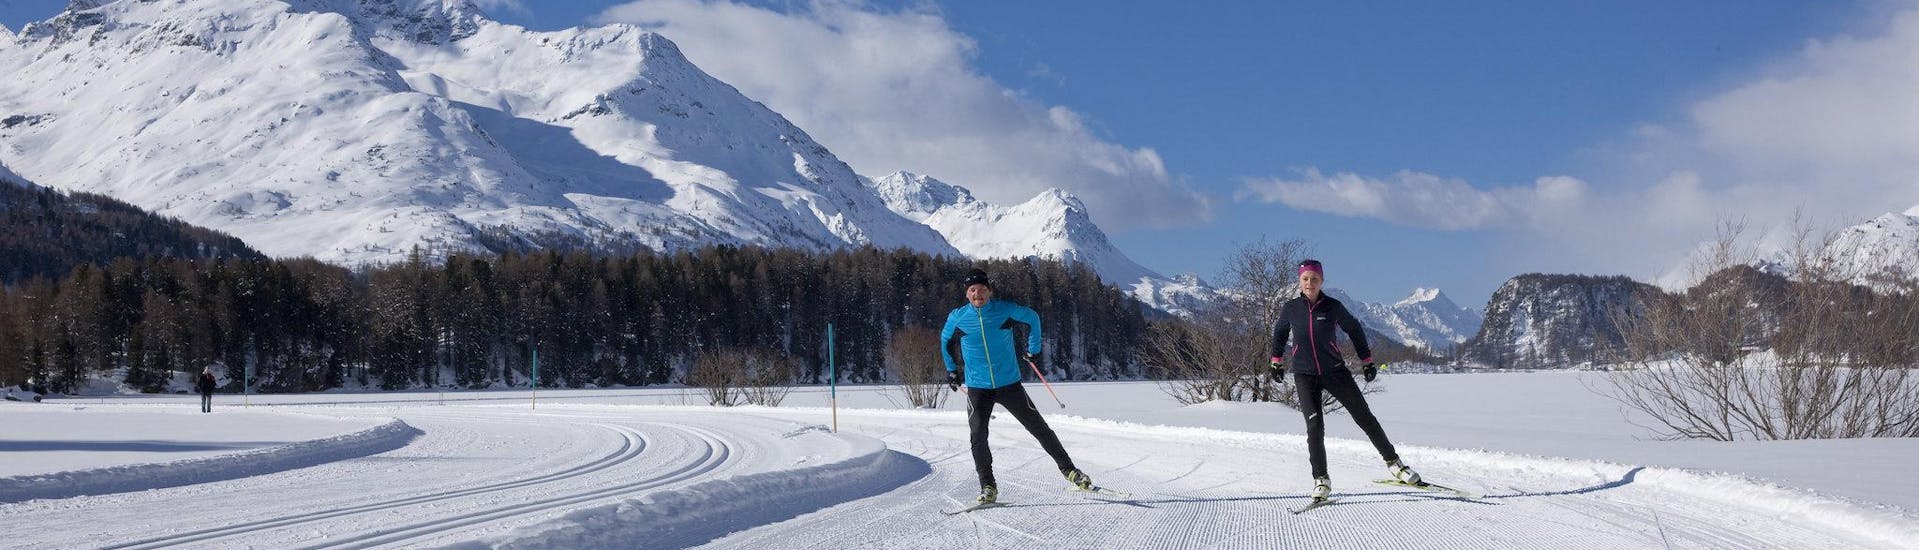 Zwei Personen lernen das Langlaufen in einem Langlaufkurs im Skigebiet Oberstdorf.